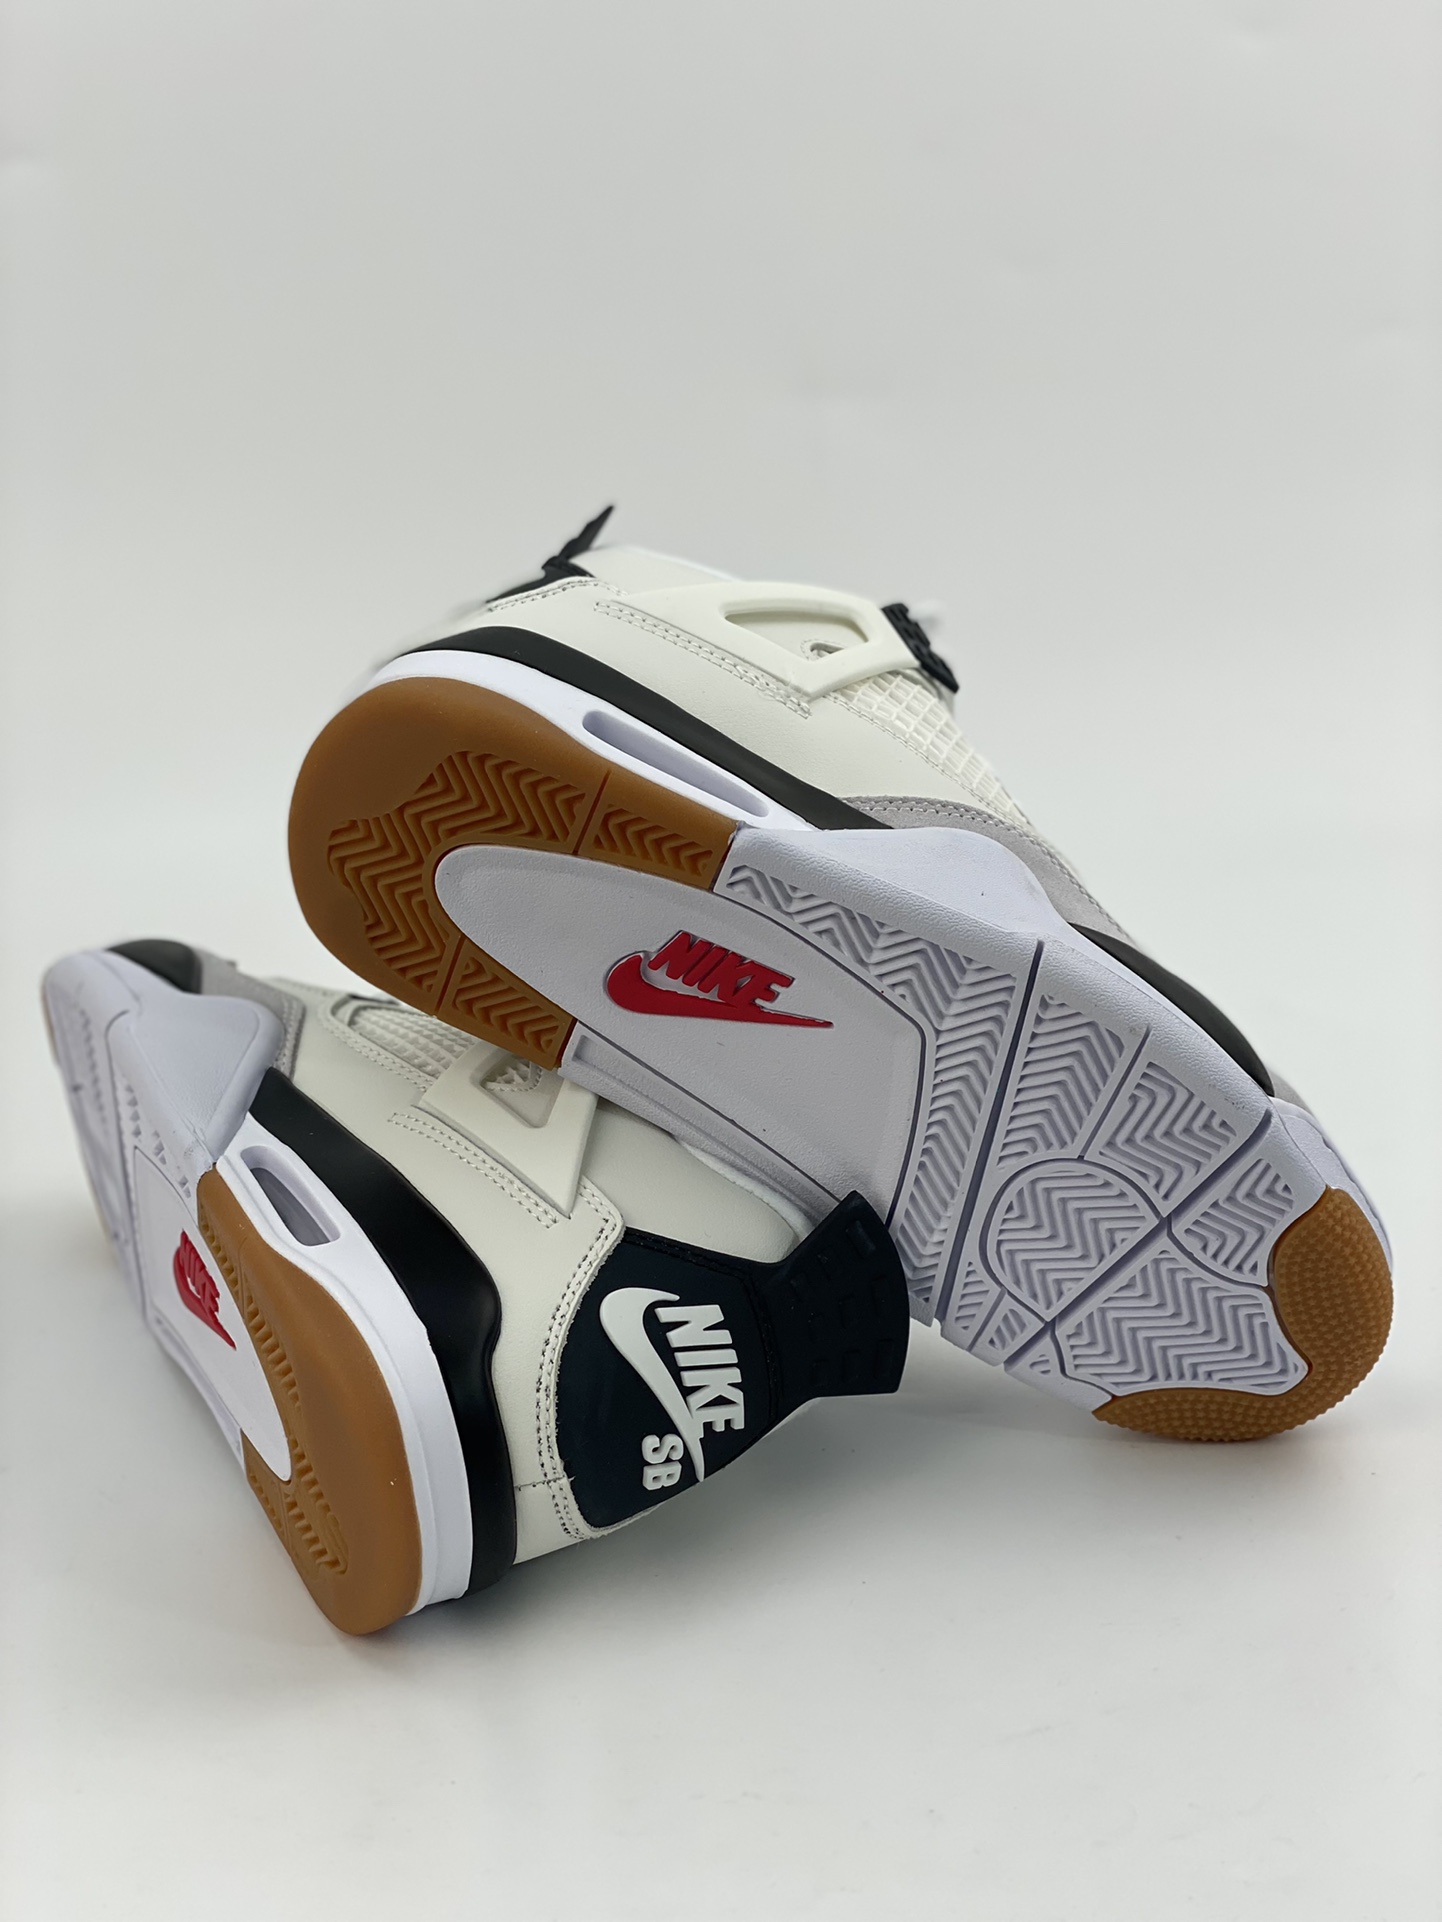 Nike SB x Air Jordan 4 Retro 